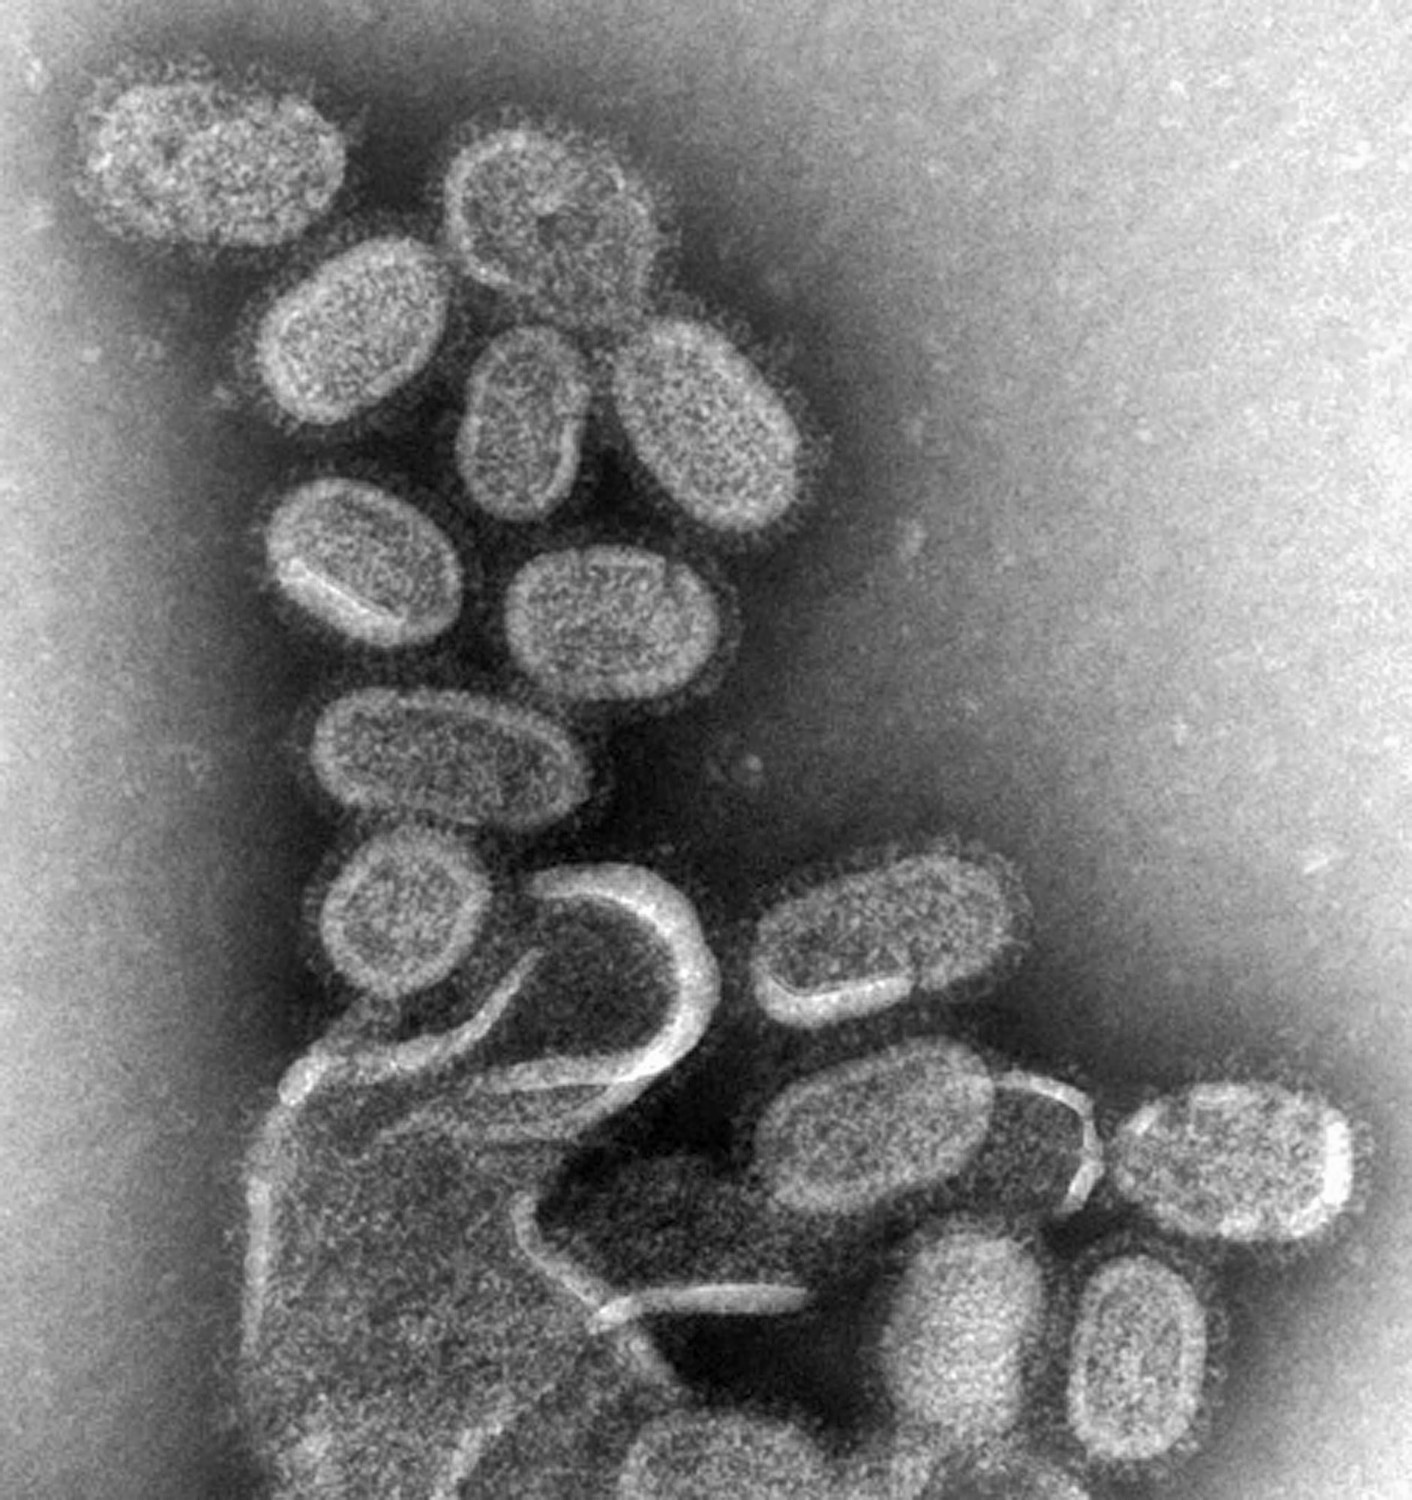 human influenza virus microscope